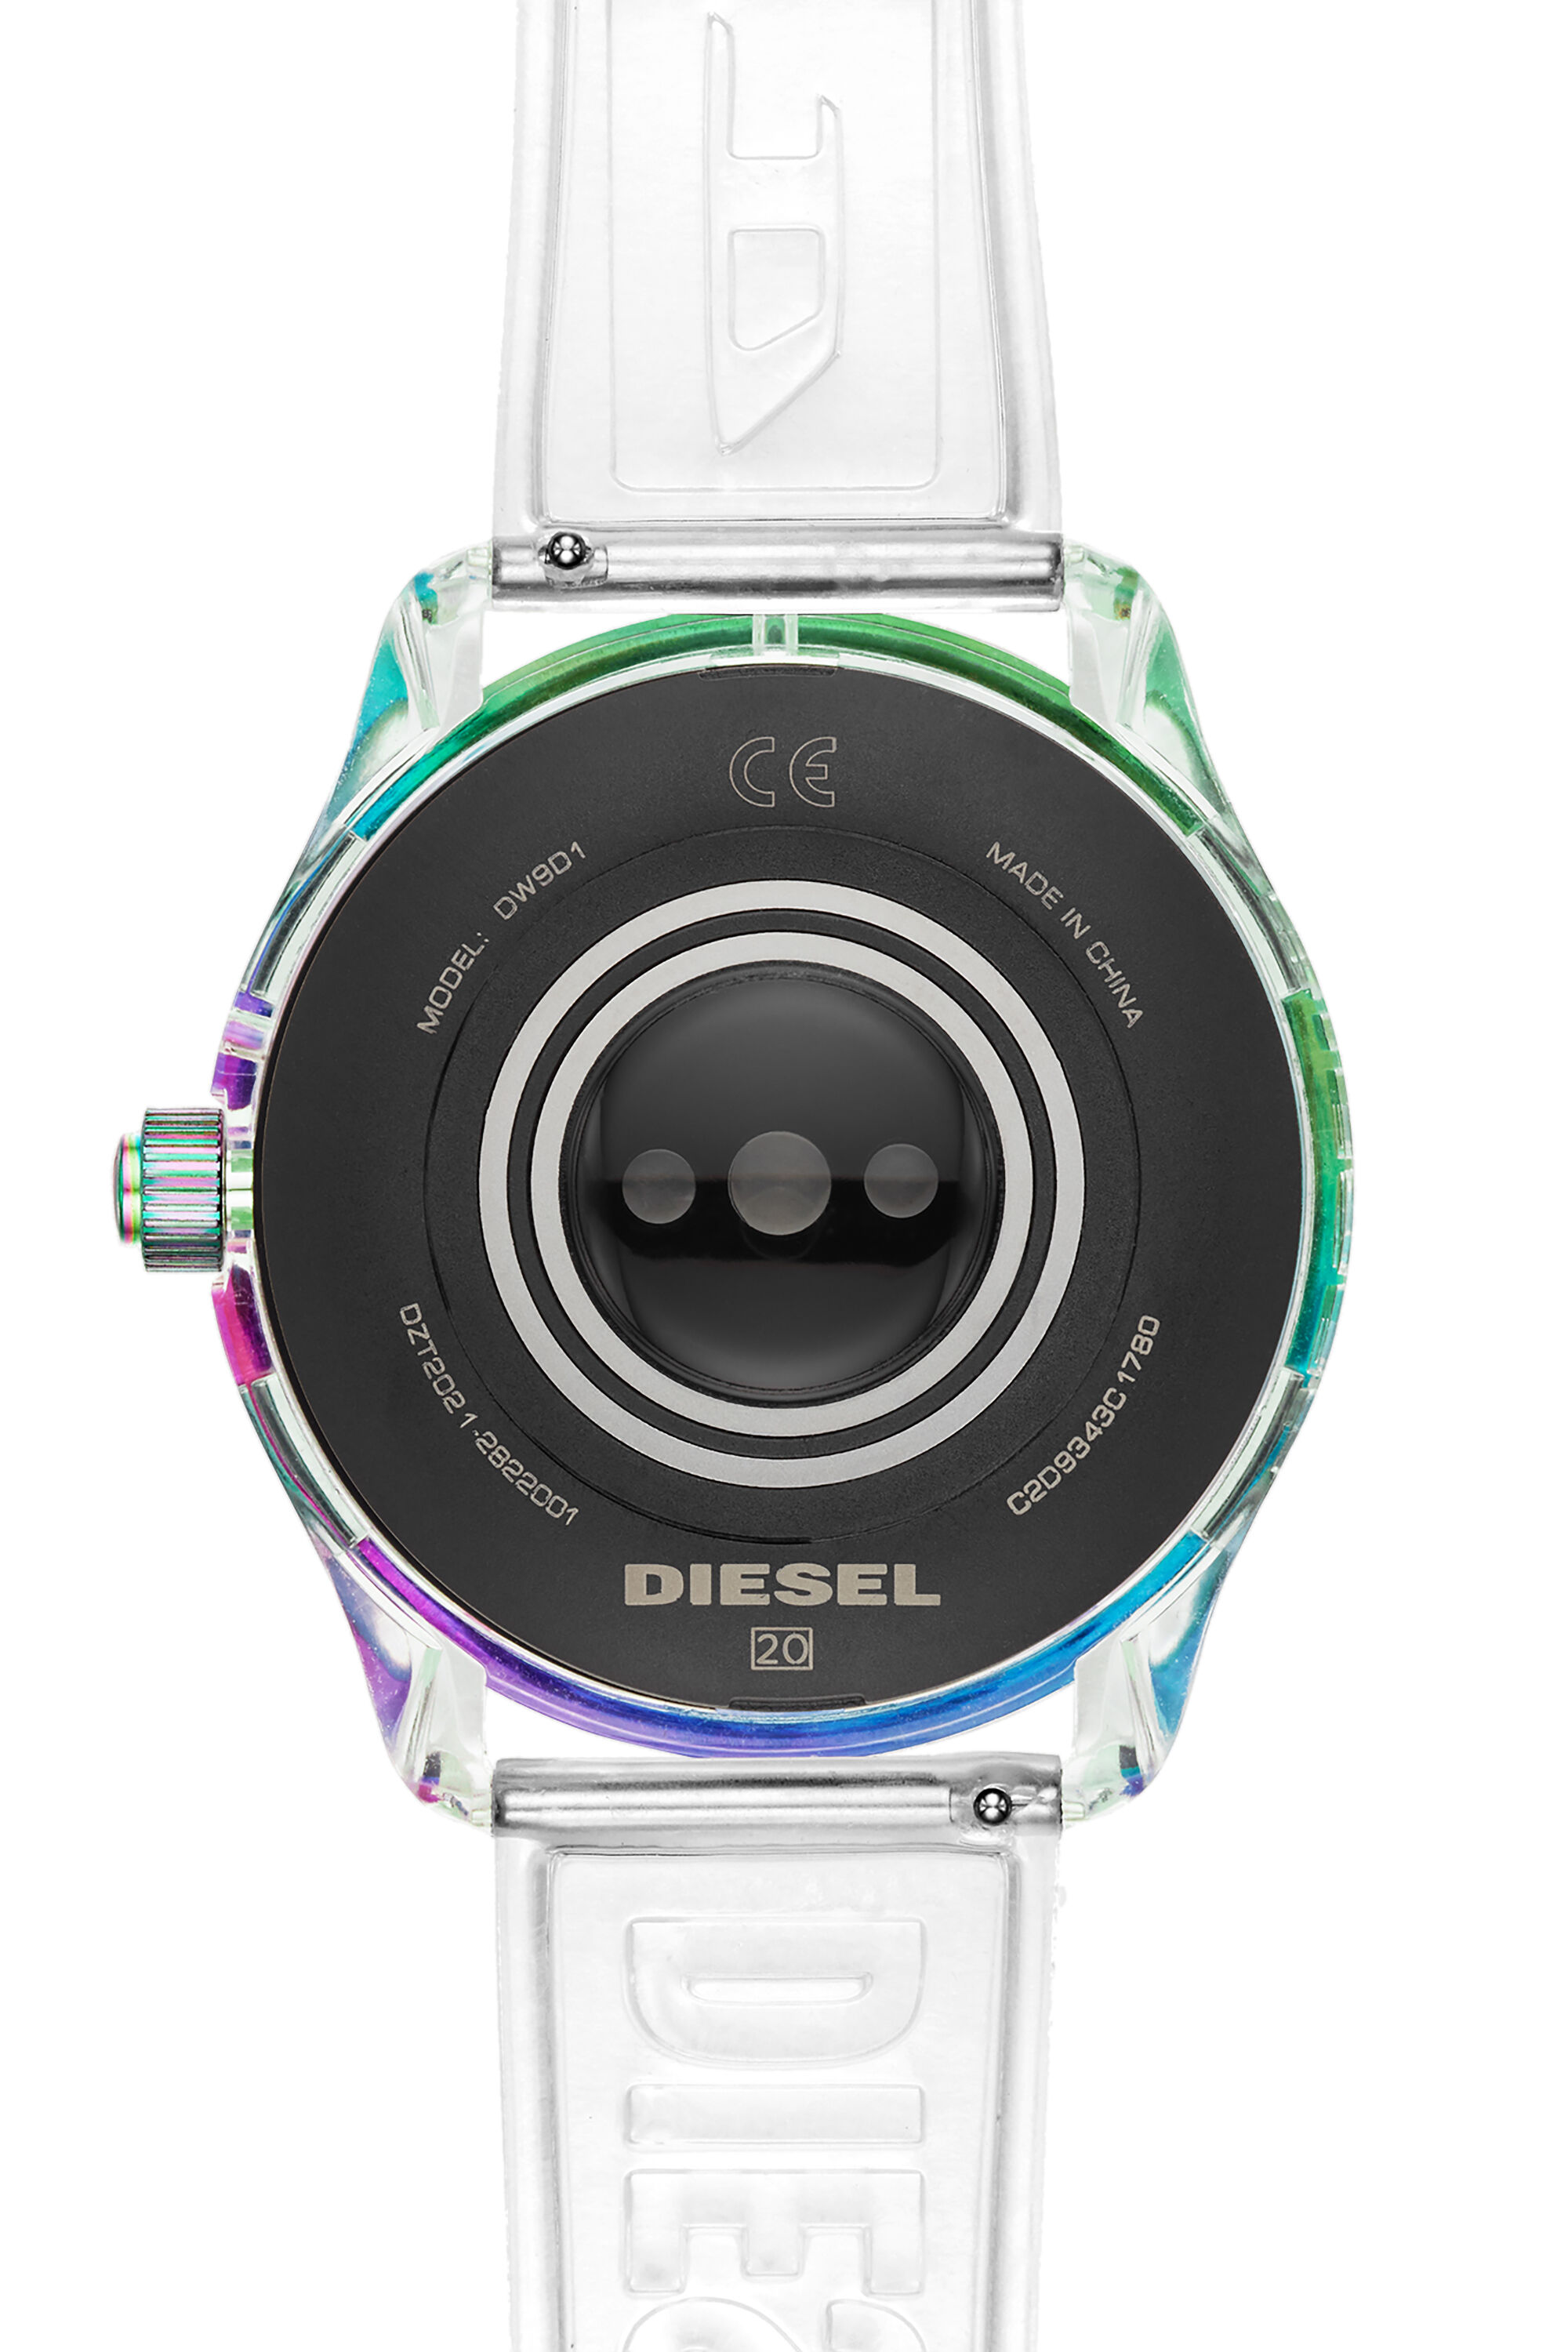 Diesel - DT2021, Bianco - Image 4